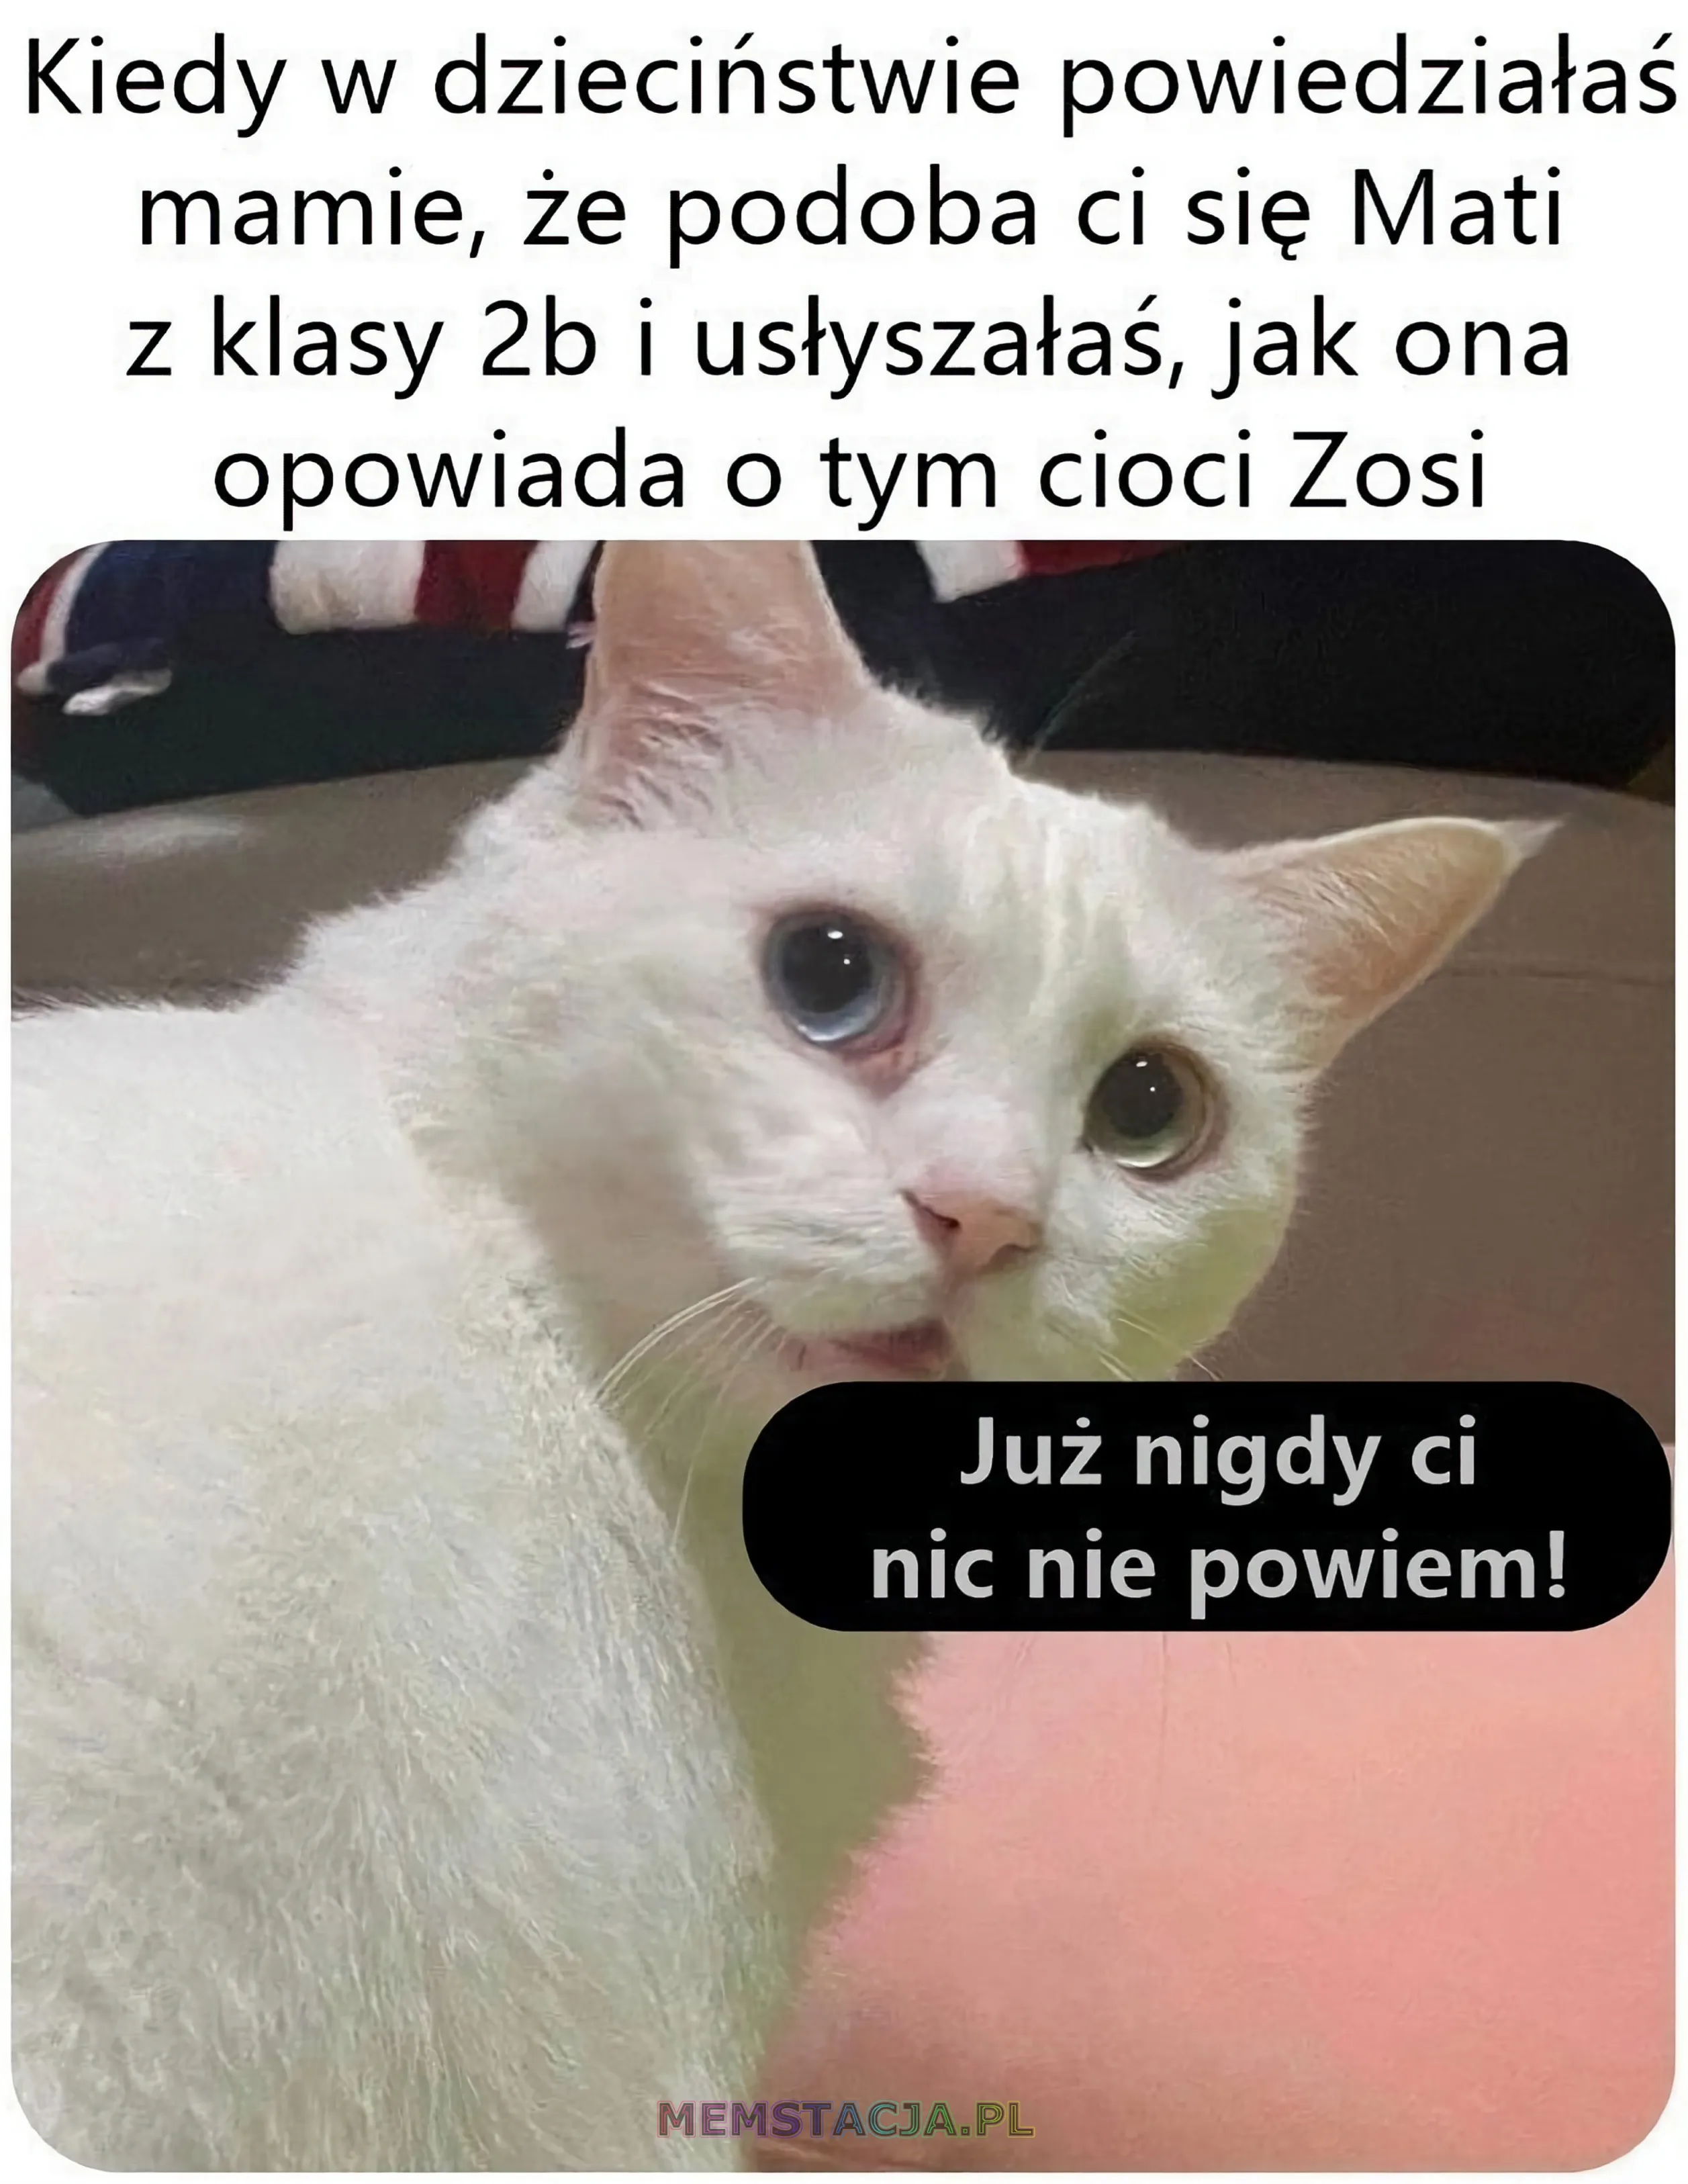 Mem przedstawiający zdjęcie smutnego kotka: 'Kiedy w dzieciństwie powiedziałaś mamie, że podoba ci się Mati z klasy 2b i usłyszałaś, jak ona opowiada o tym cioci Zosi'; 'Już nigdy ci nic nie powiem!'